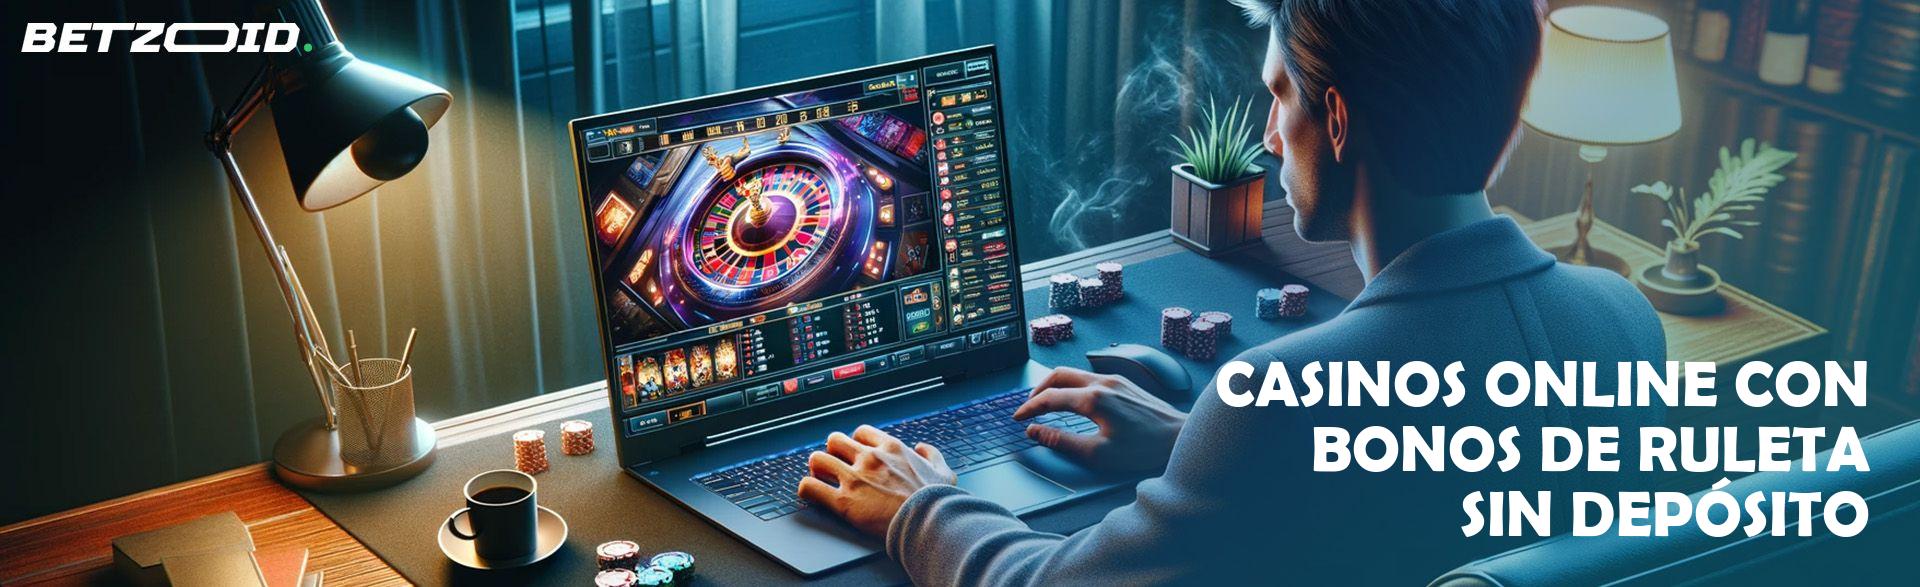 Casinos Online con Bonos de Ruleta sin Depósito.